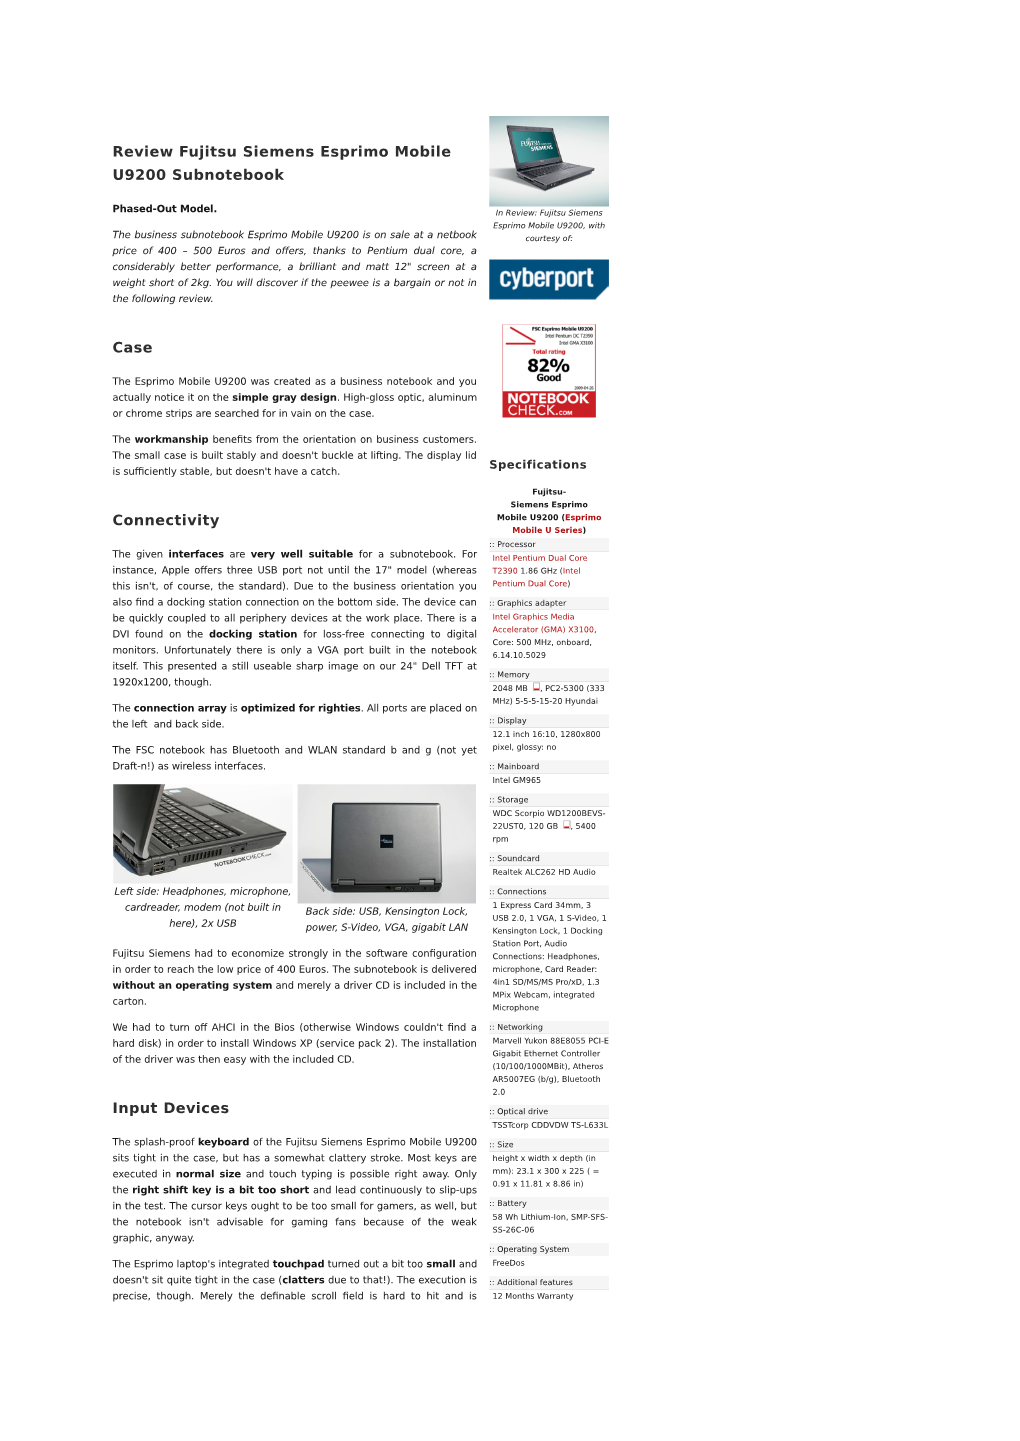 Review Fujitsu Siemens Esprimo Mobile U9200 Subnotebook Case